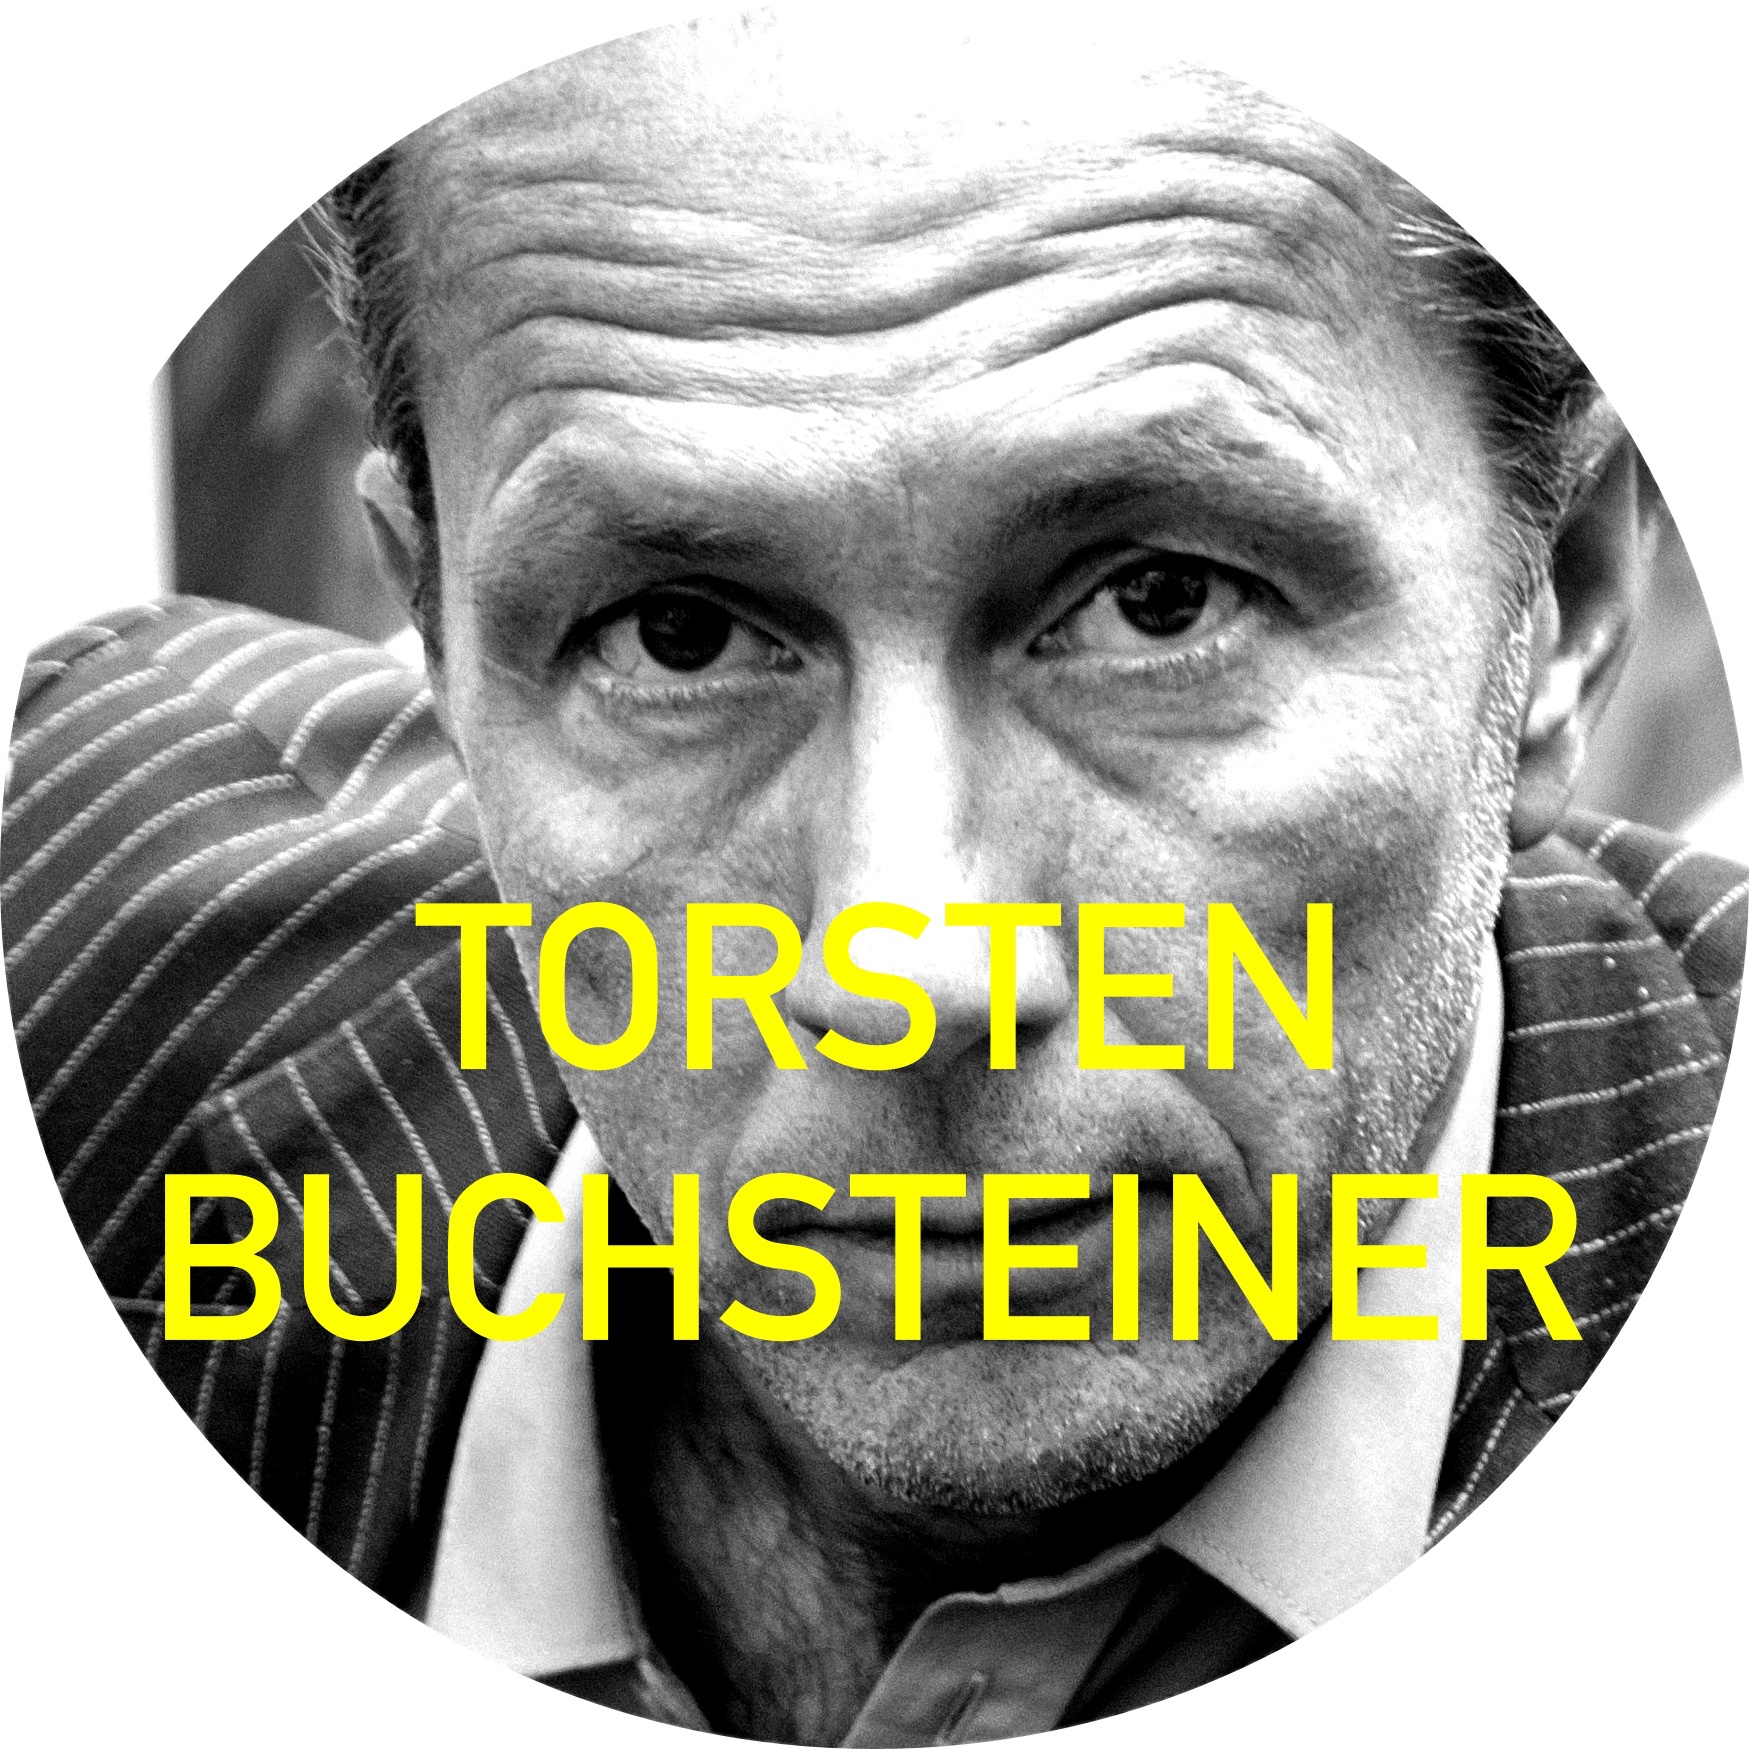 Torsten Buchsteiner